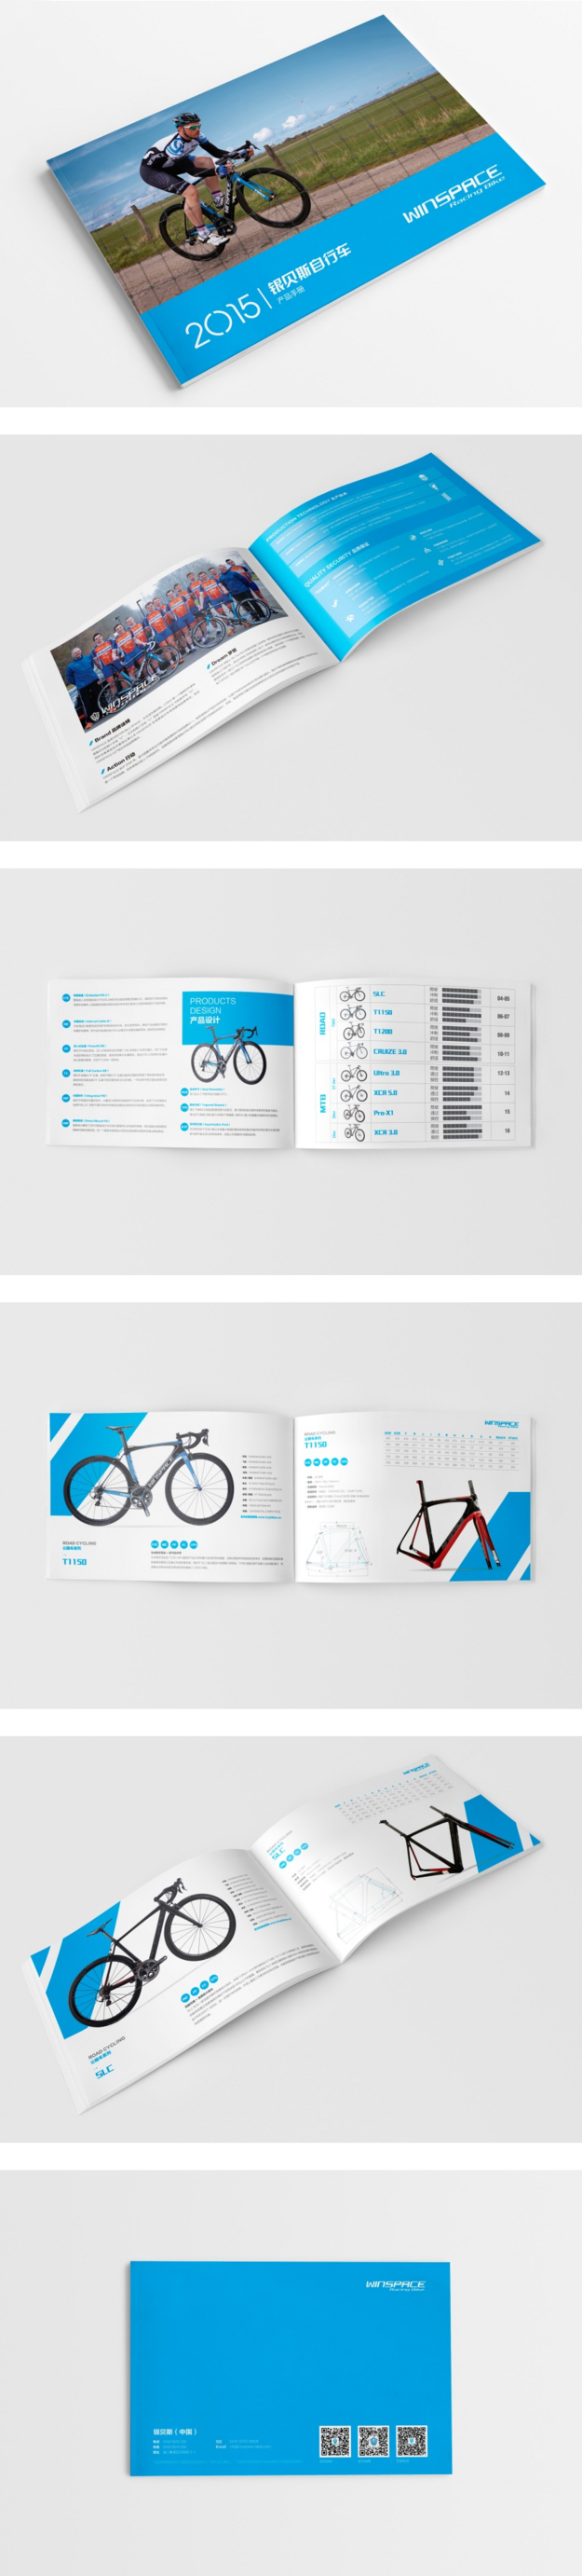 合肥画册设计公司_合肥自行车产品画册设计_宣传册-产品画册欣赏-合肥高档画册设计-著名画册设计公司